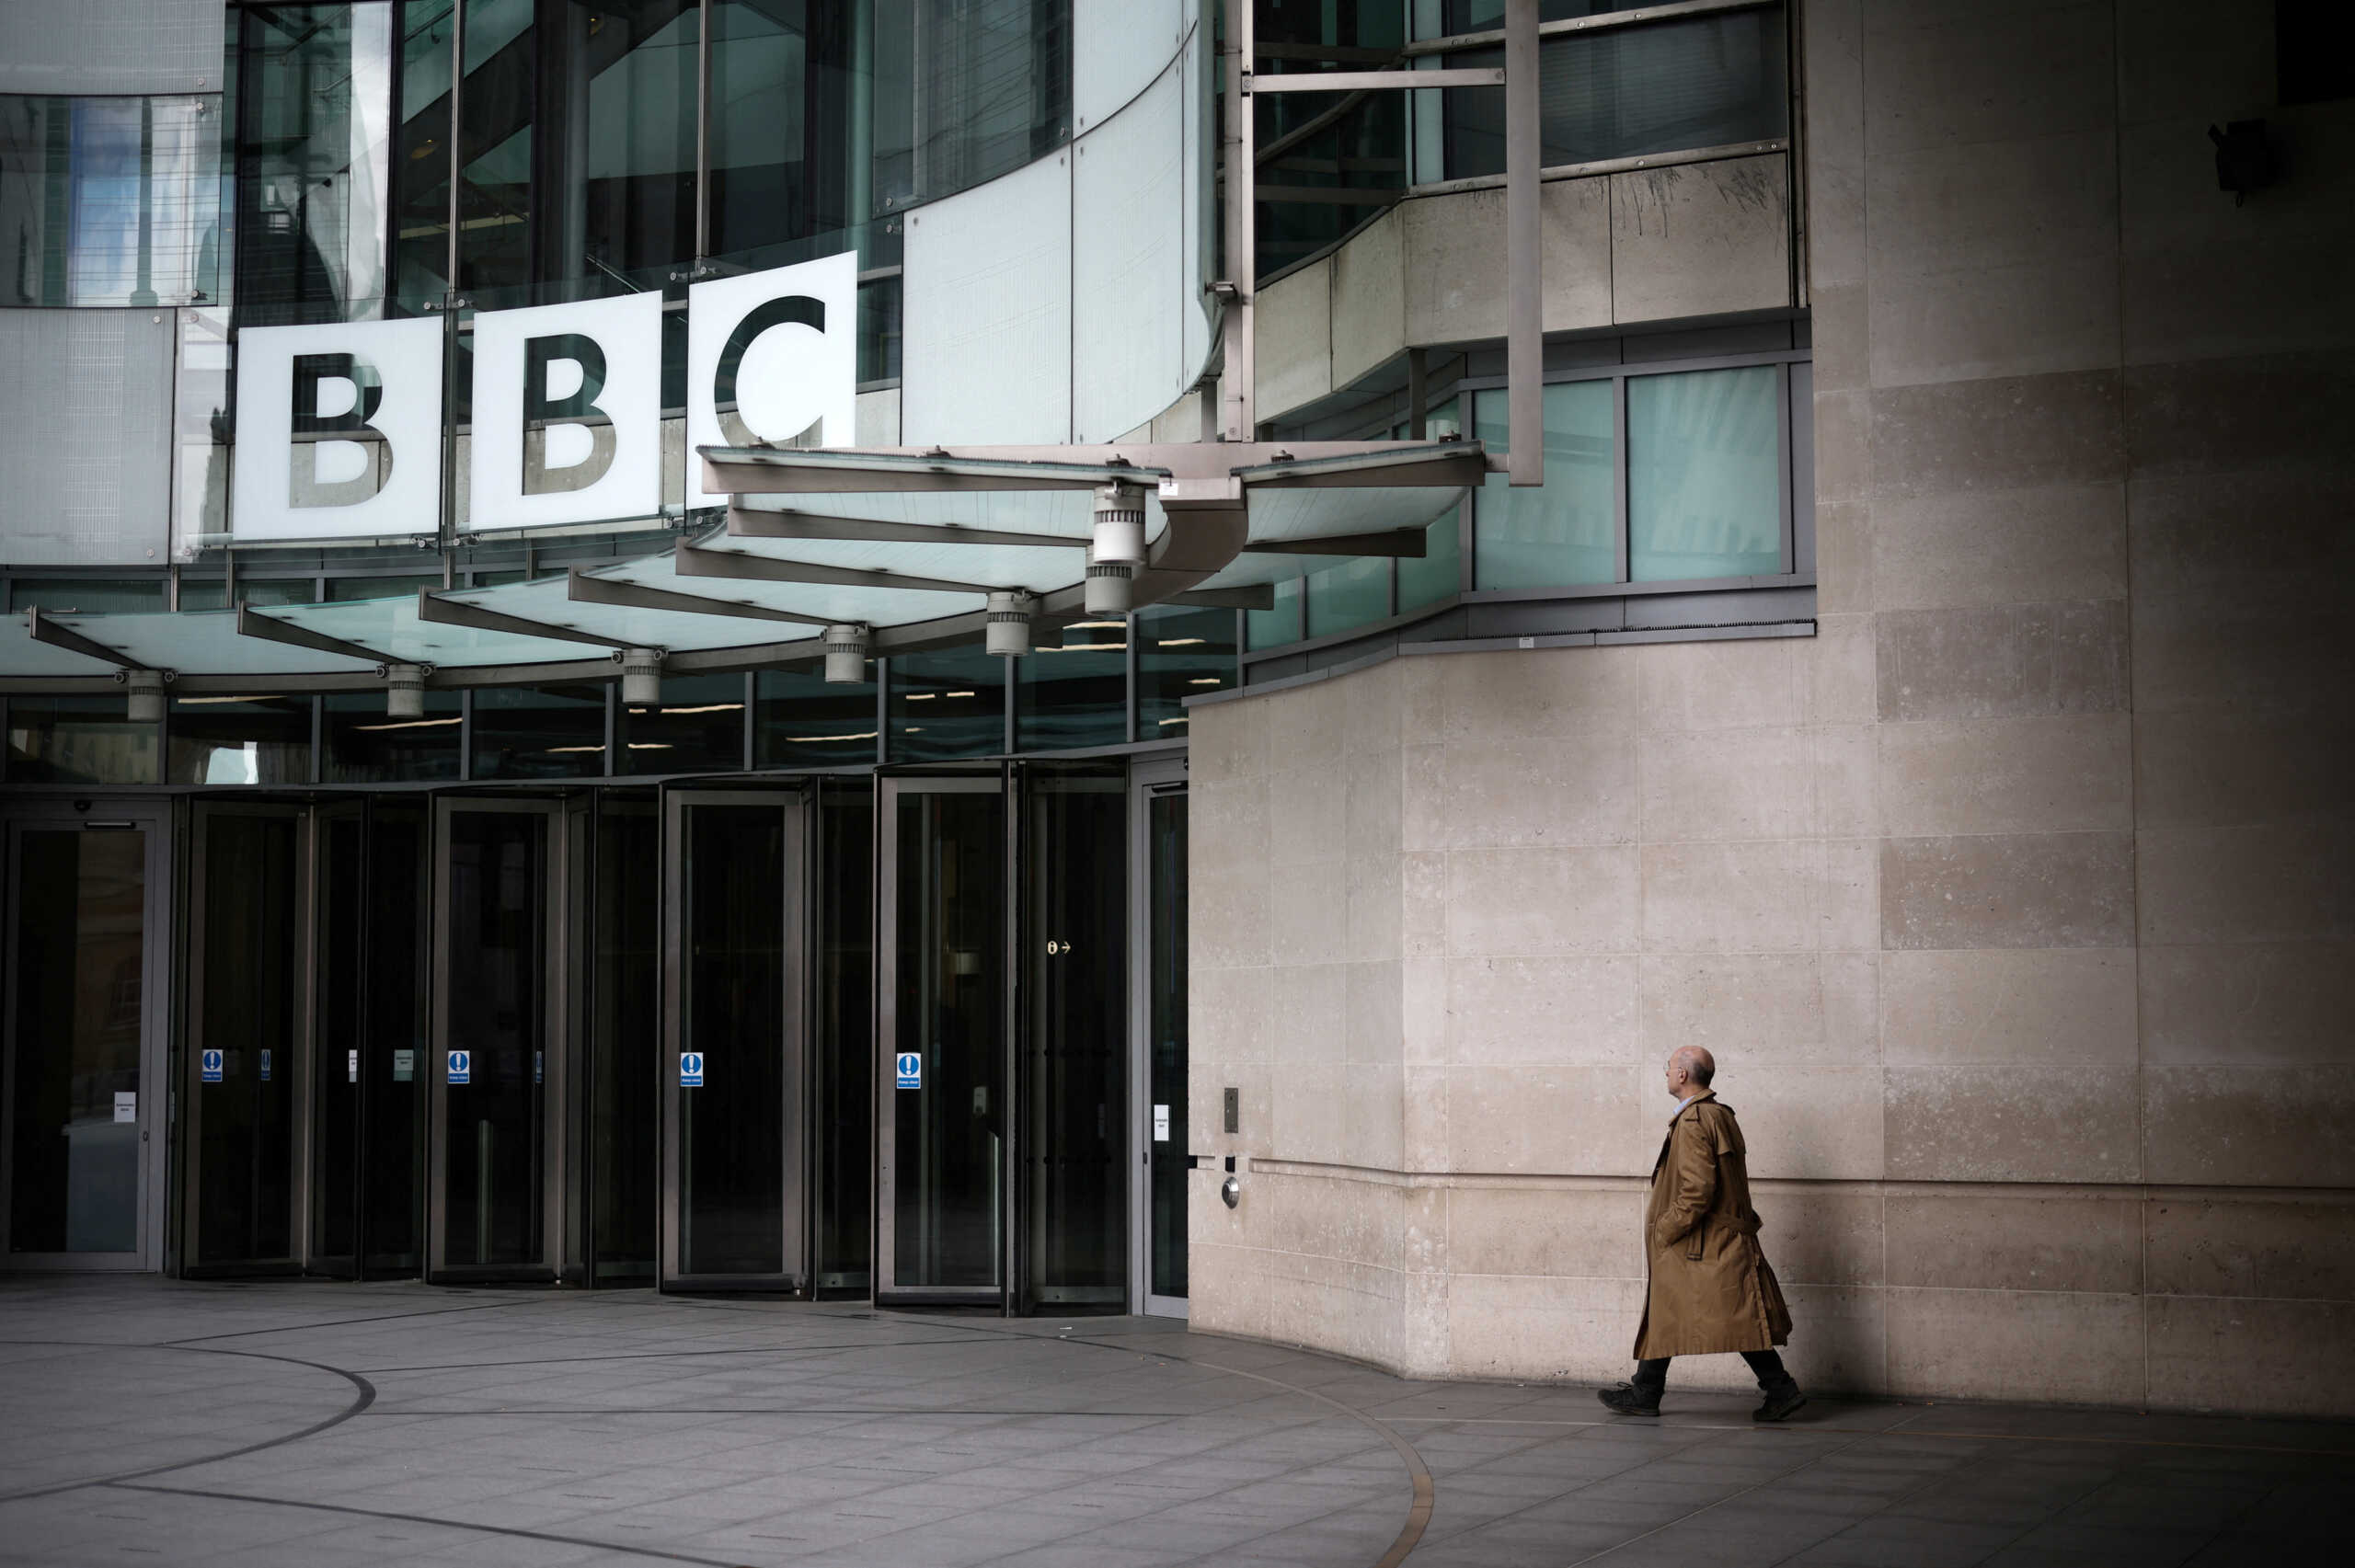 Βρετανία – BBC: Παρουσιαστής κατηγορείται ότι έδινε χρήματα σε ανήλικο για να του στέλνει γυμνές φωτογραφίες